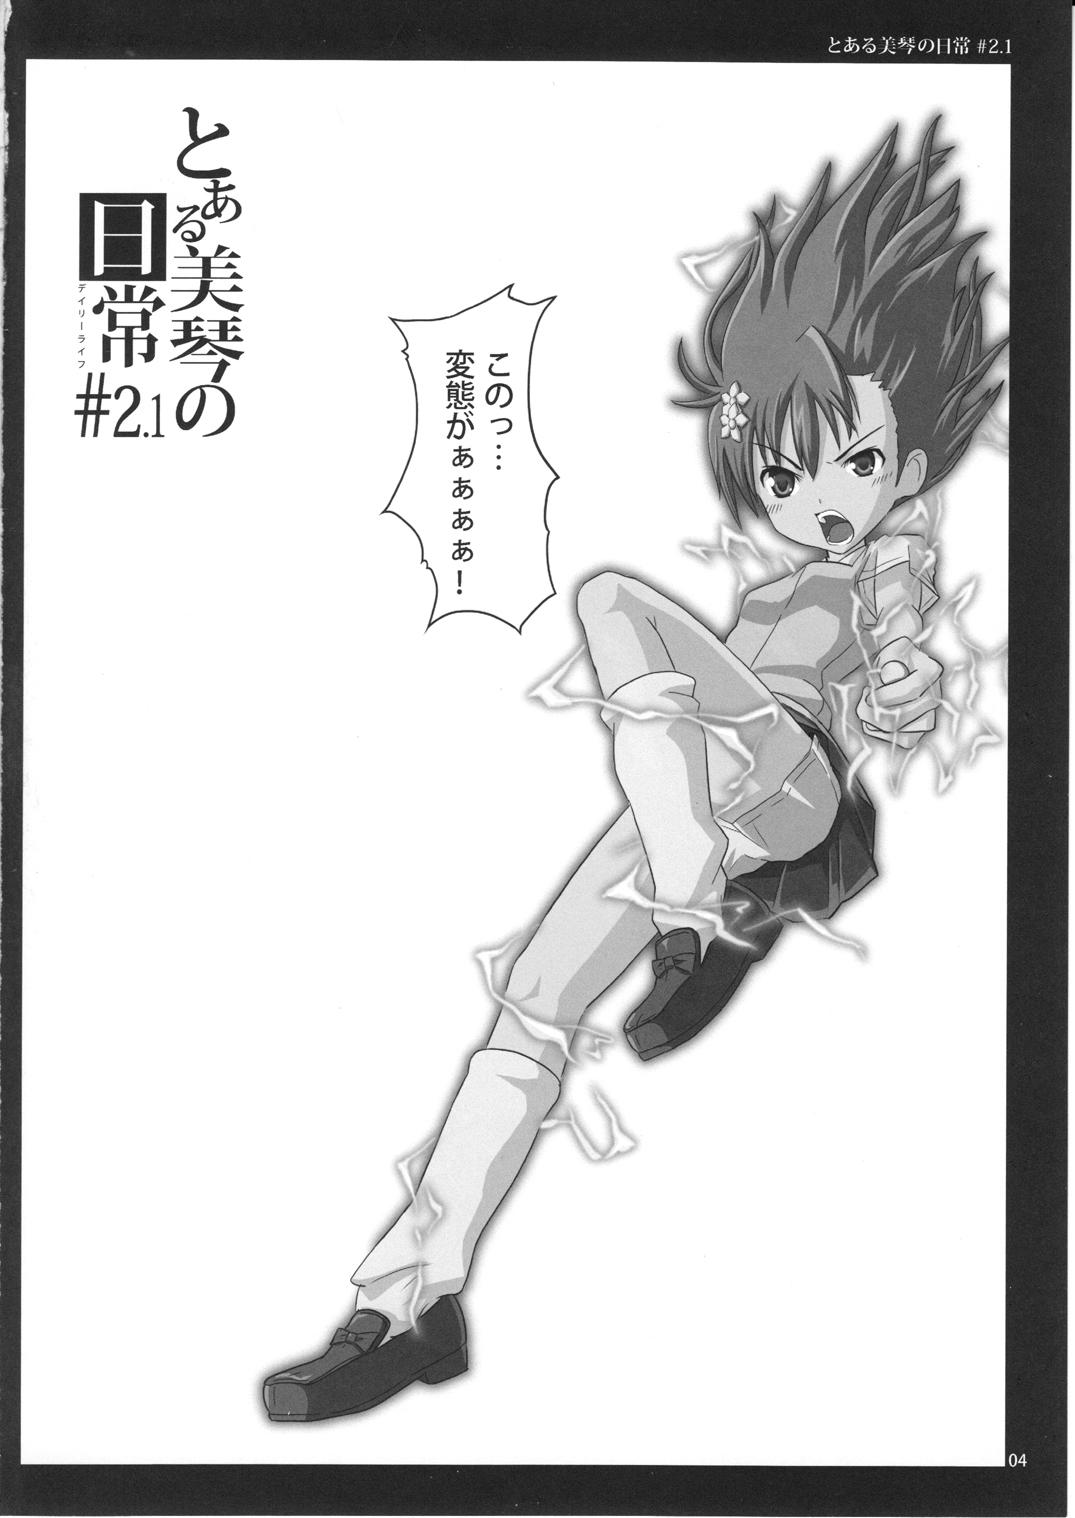 Pelada To Aru Mikoto no Nichijou 2.1 - Toaru kagaku no railgun Hood - Page 4